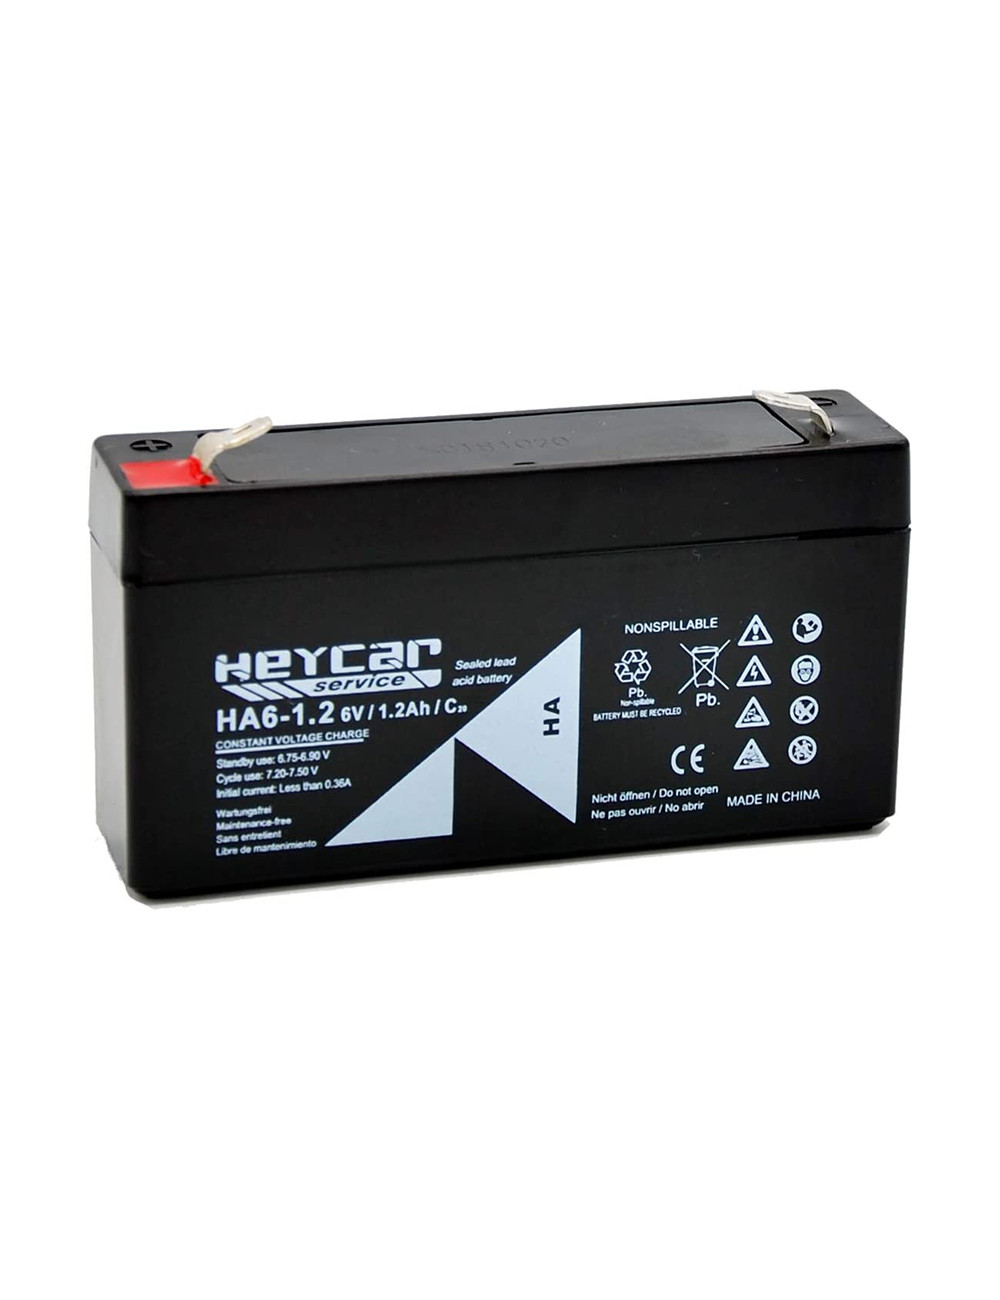 Batería 6V 1,2Ah C20 Heycar Service - HA6-1.2 -  - 8435231203111 - 1